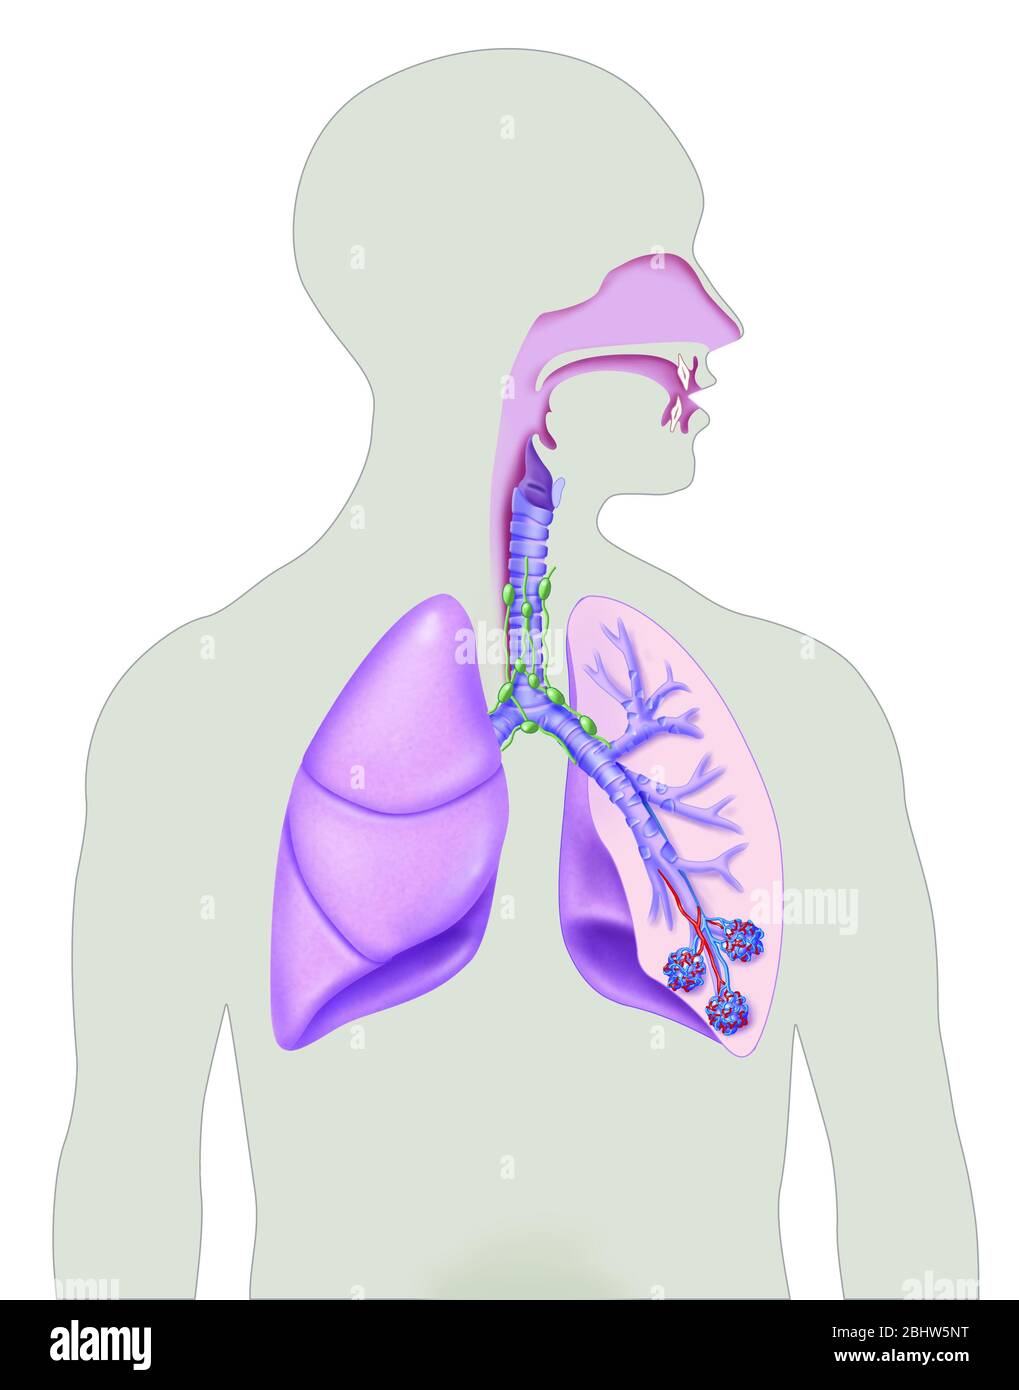 Atemwege, Nasenhöhle, Luftröhre, Pommons, Alveolen. Darstellung der Atemwege in einer Mann-Silhouette, Kopf im Profil. Wir unterscheiden das na Stockfoto